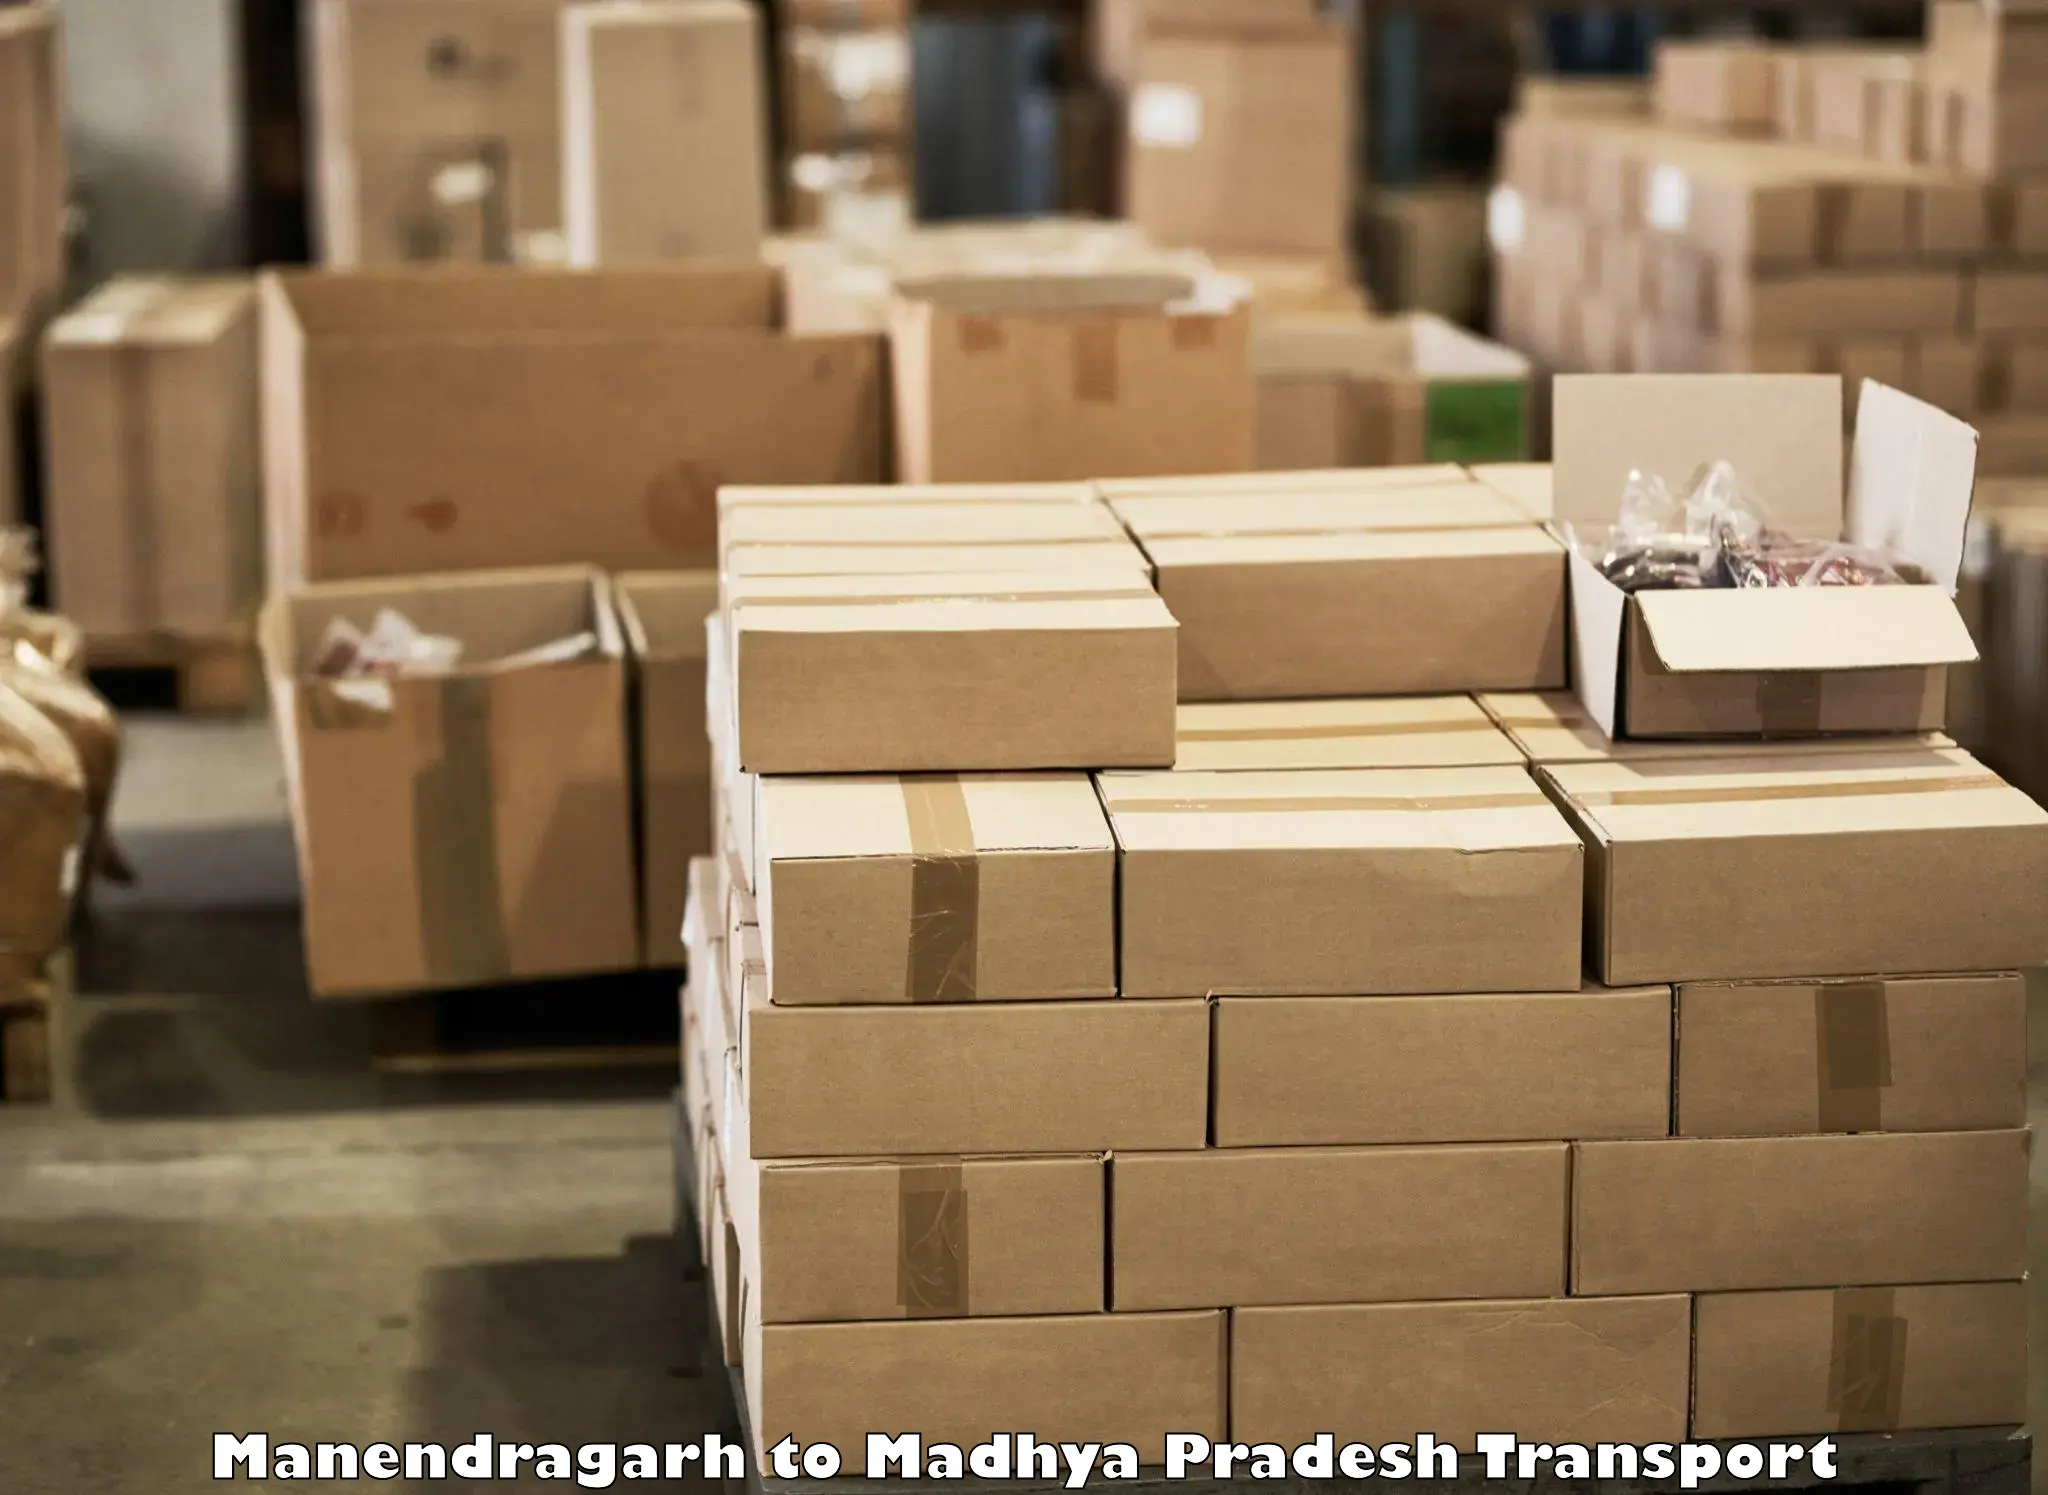 Container transport service Manendragarh to Jaitwara